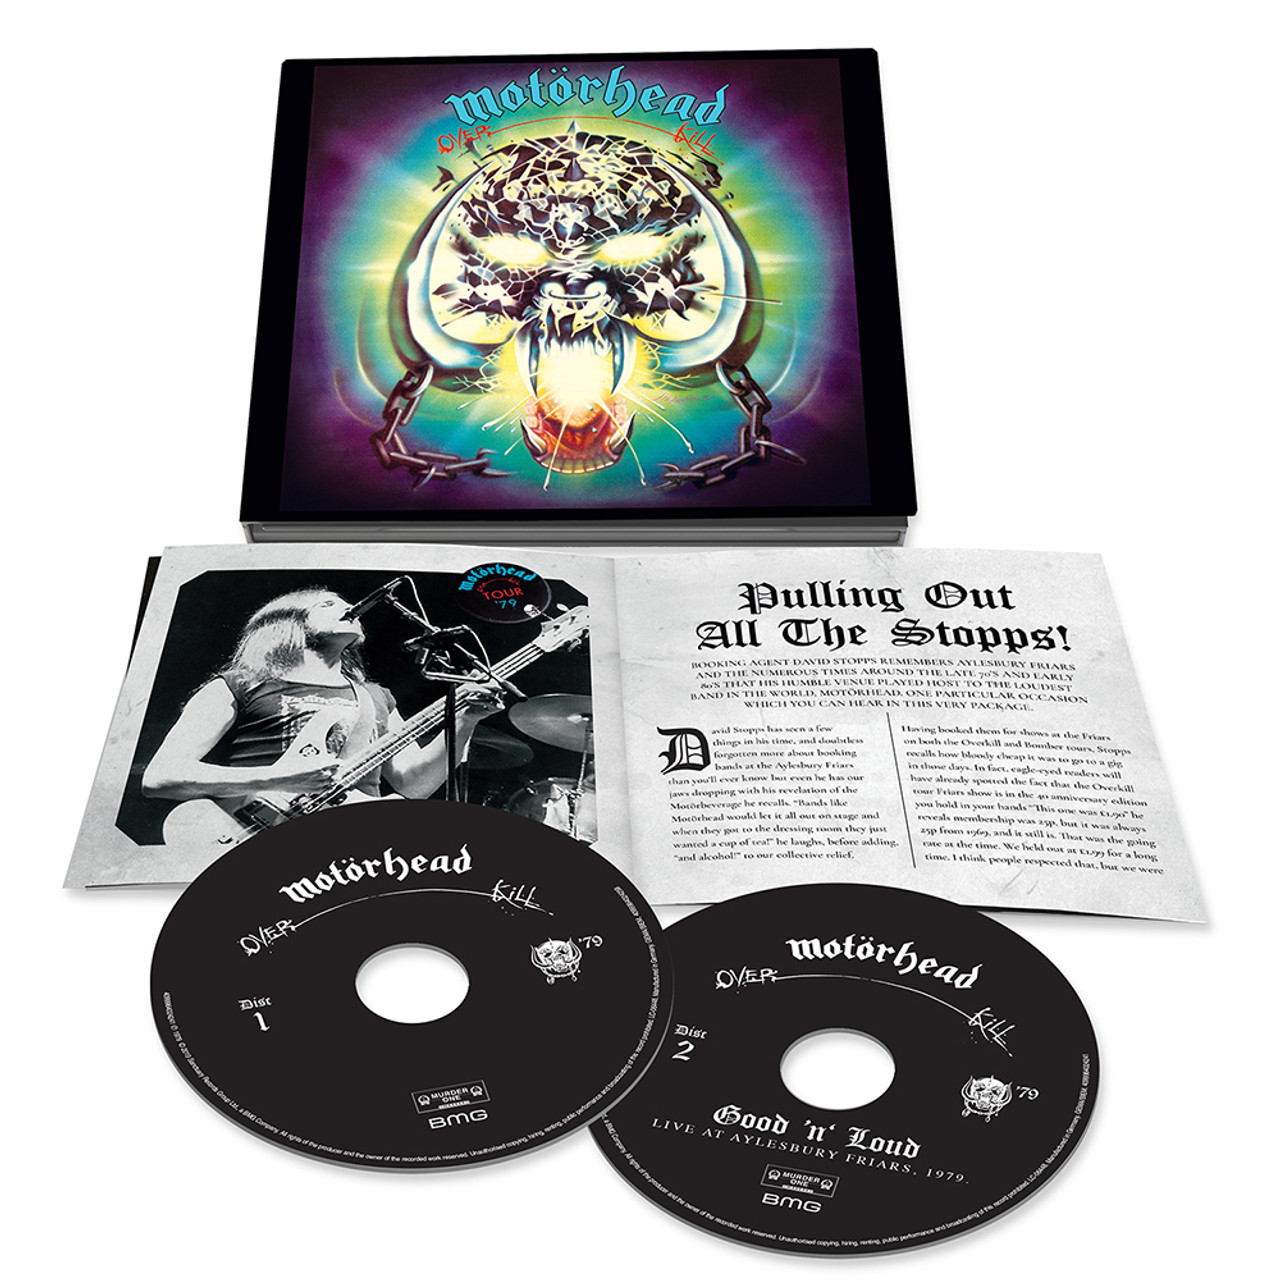 Motörhead - Overkill (2 CD)